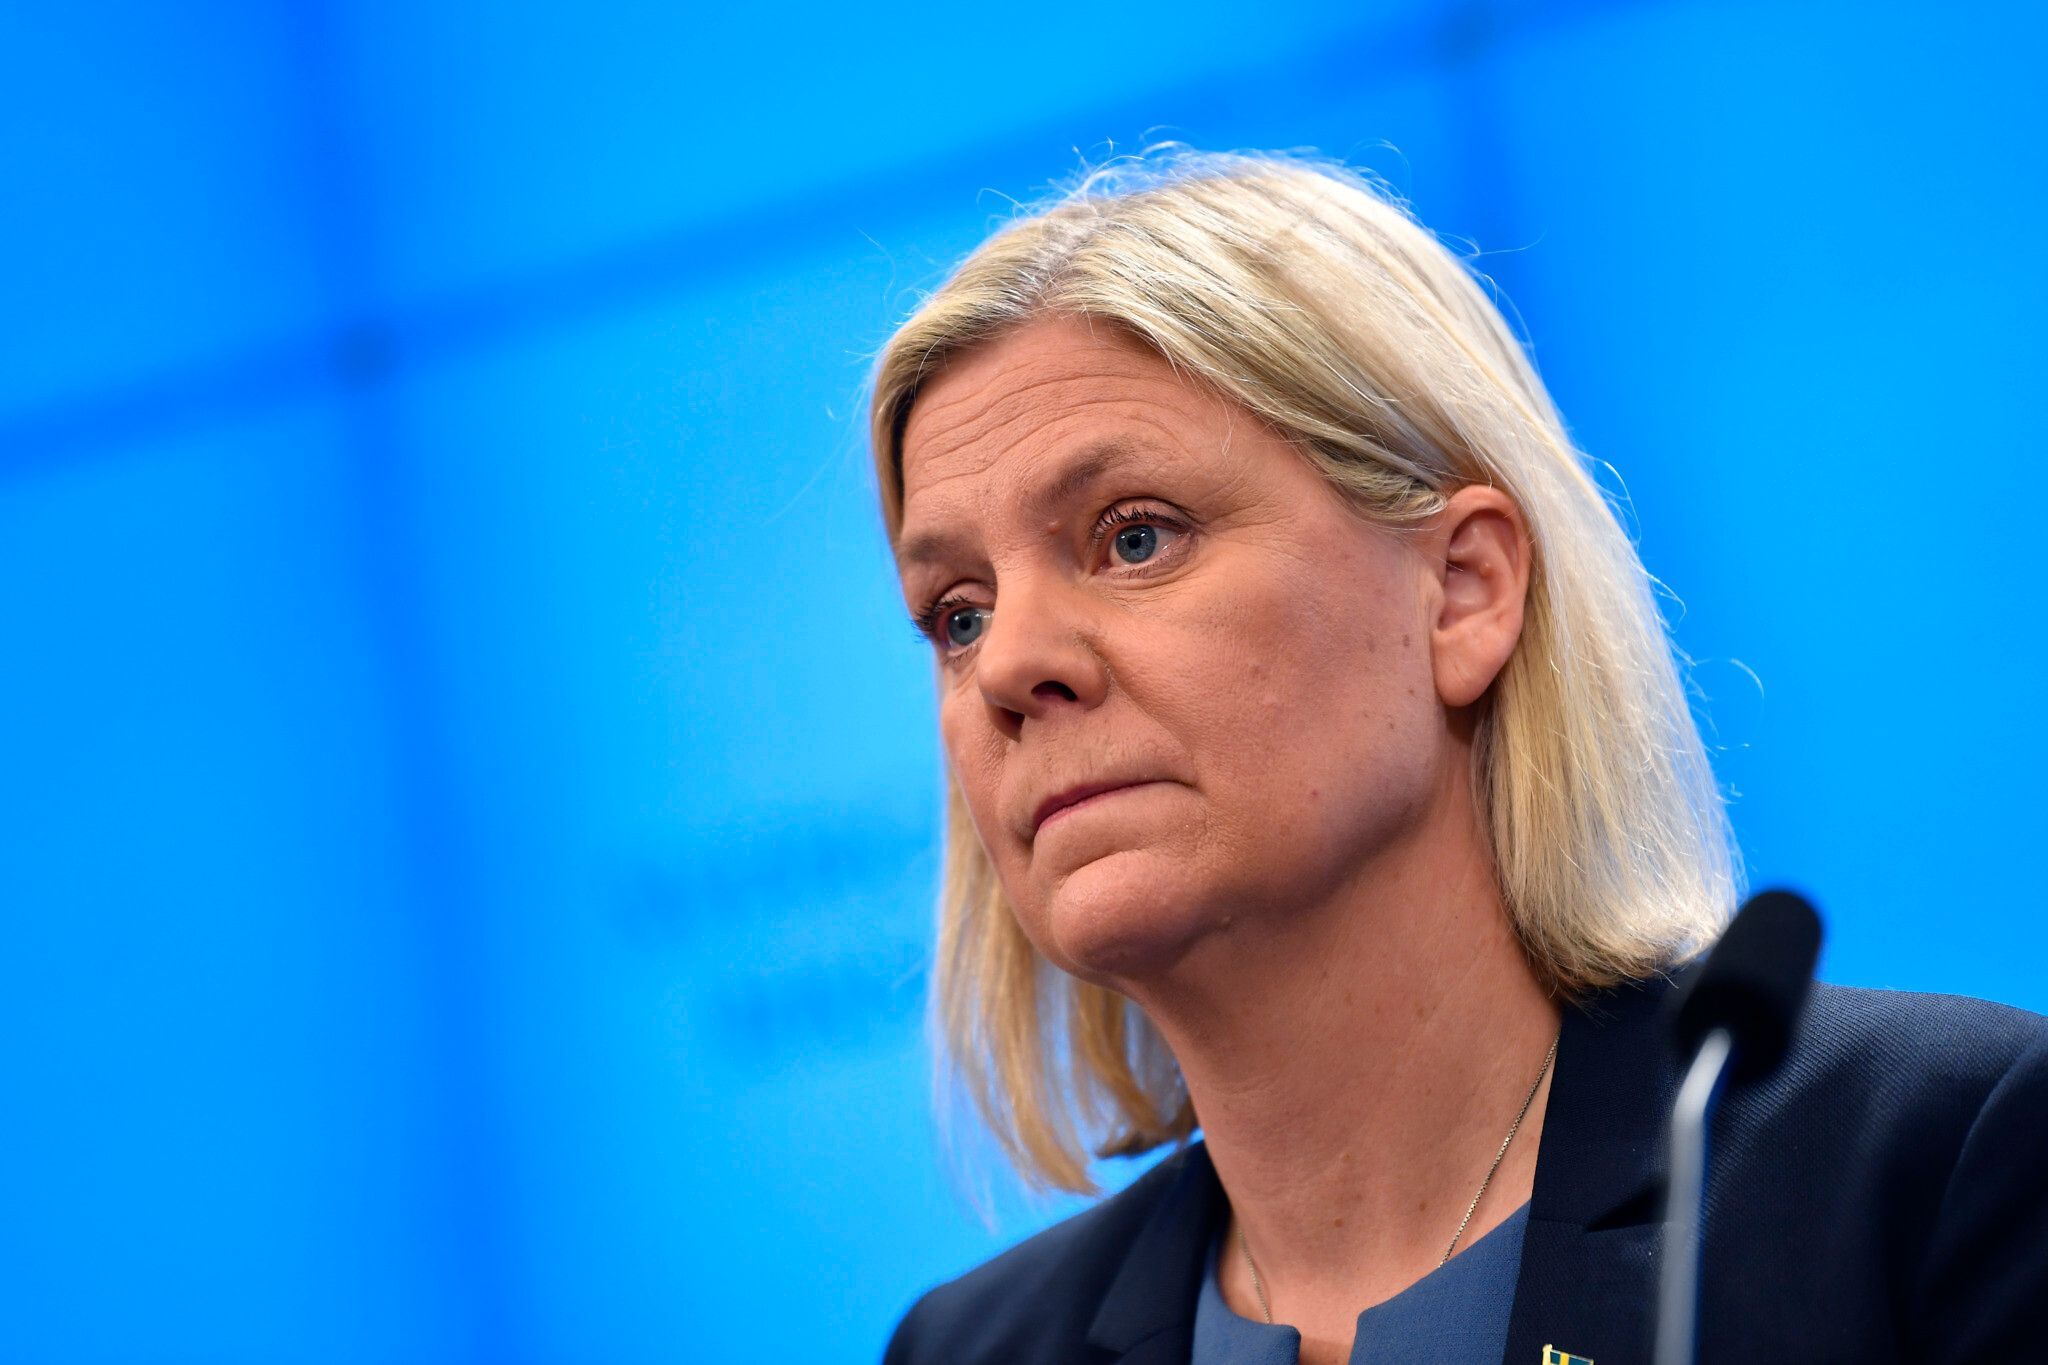 Magdalena Andersson, prima femeie premier al Suediei, a demisionat la doar câteva ore după ce a fost aleasă